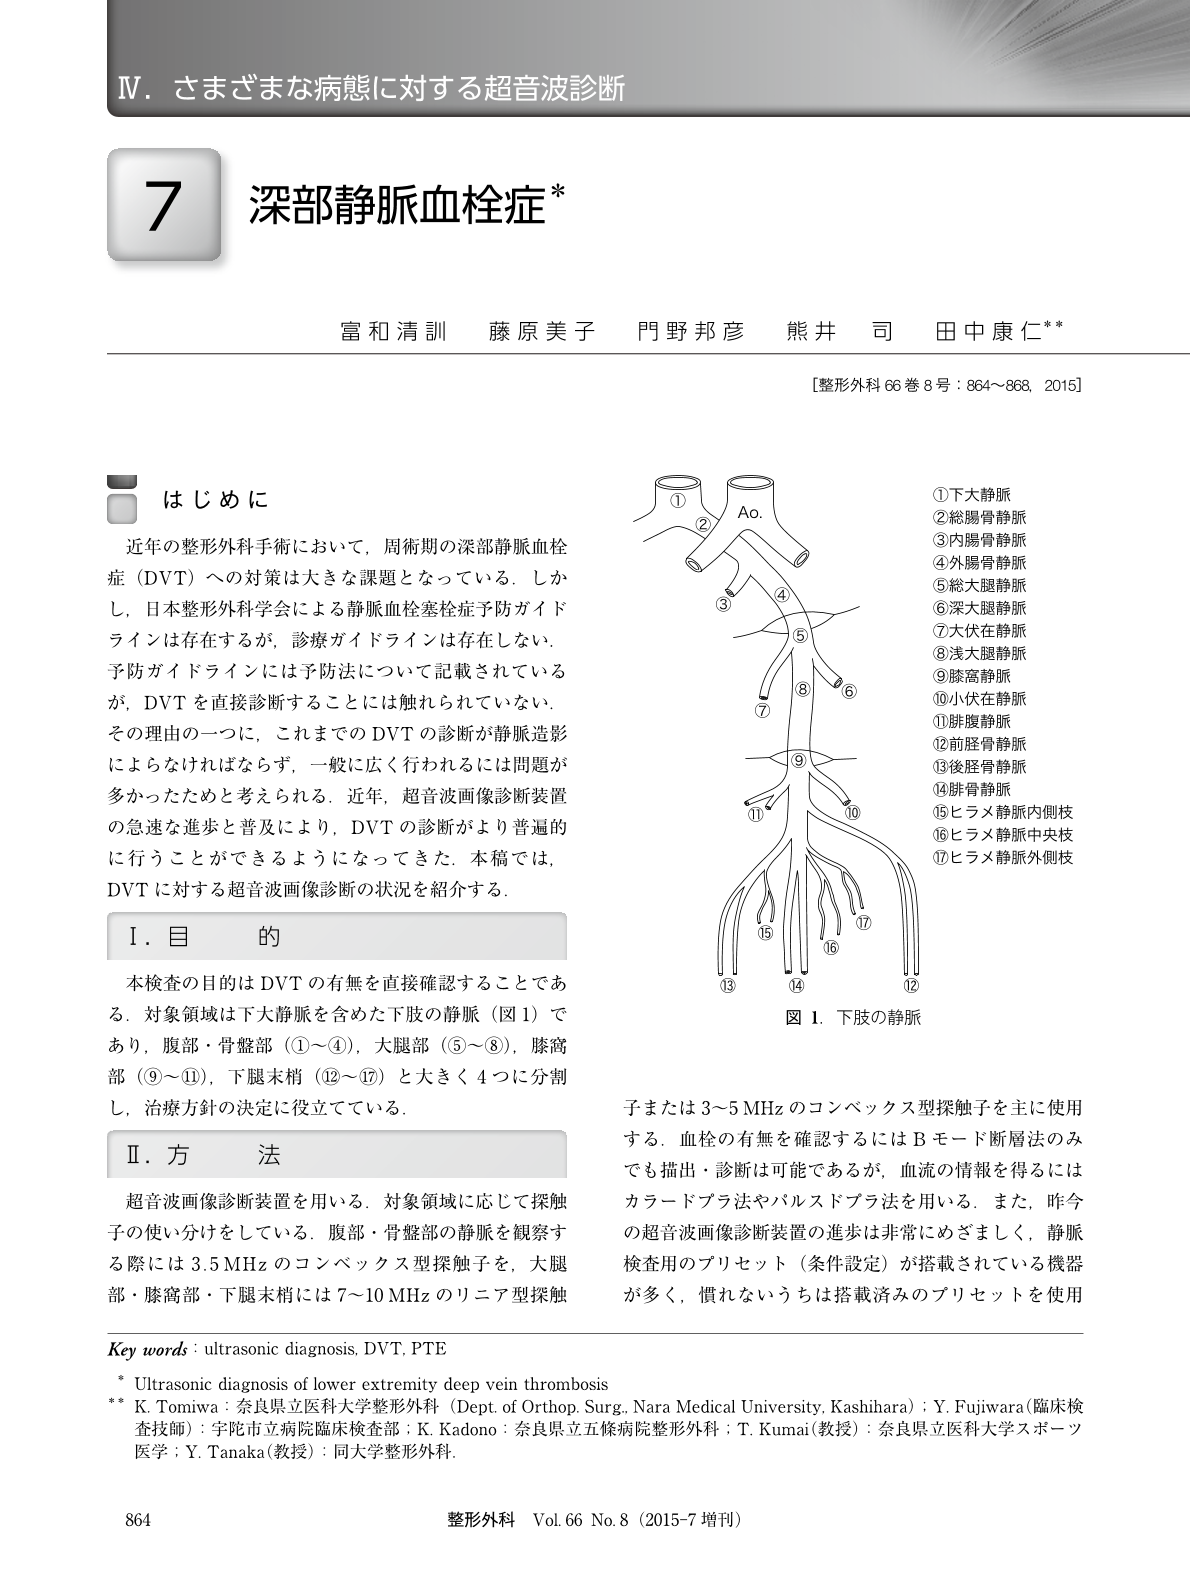 深部静脈血栓症 臨床雑誌整形外科 66巻8号 医書 Jp